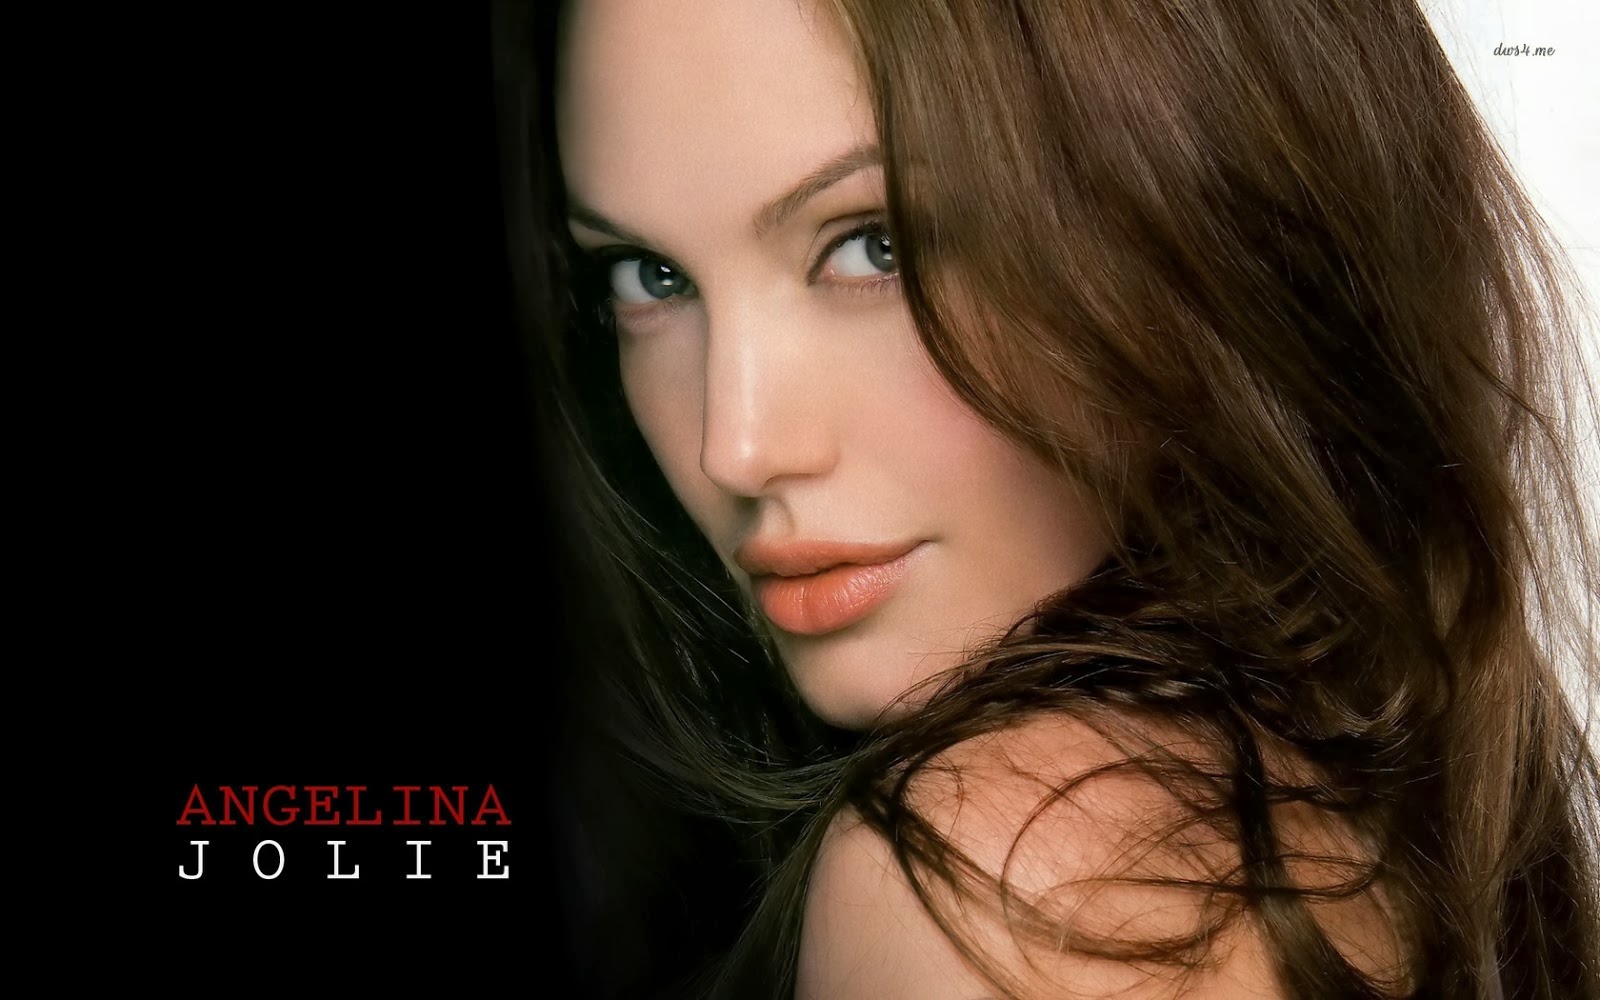 Angelina Jolie Hd Wallpaper Images Pics Hd Wallpapers Blog HD Wallpapers Download Free Images Wallpaper [wallpaper981.blogspot.com]